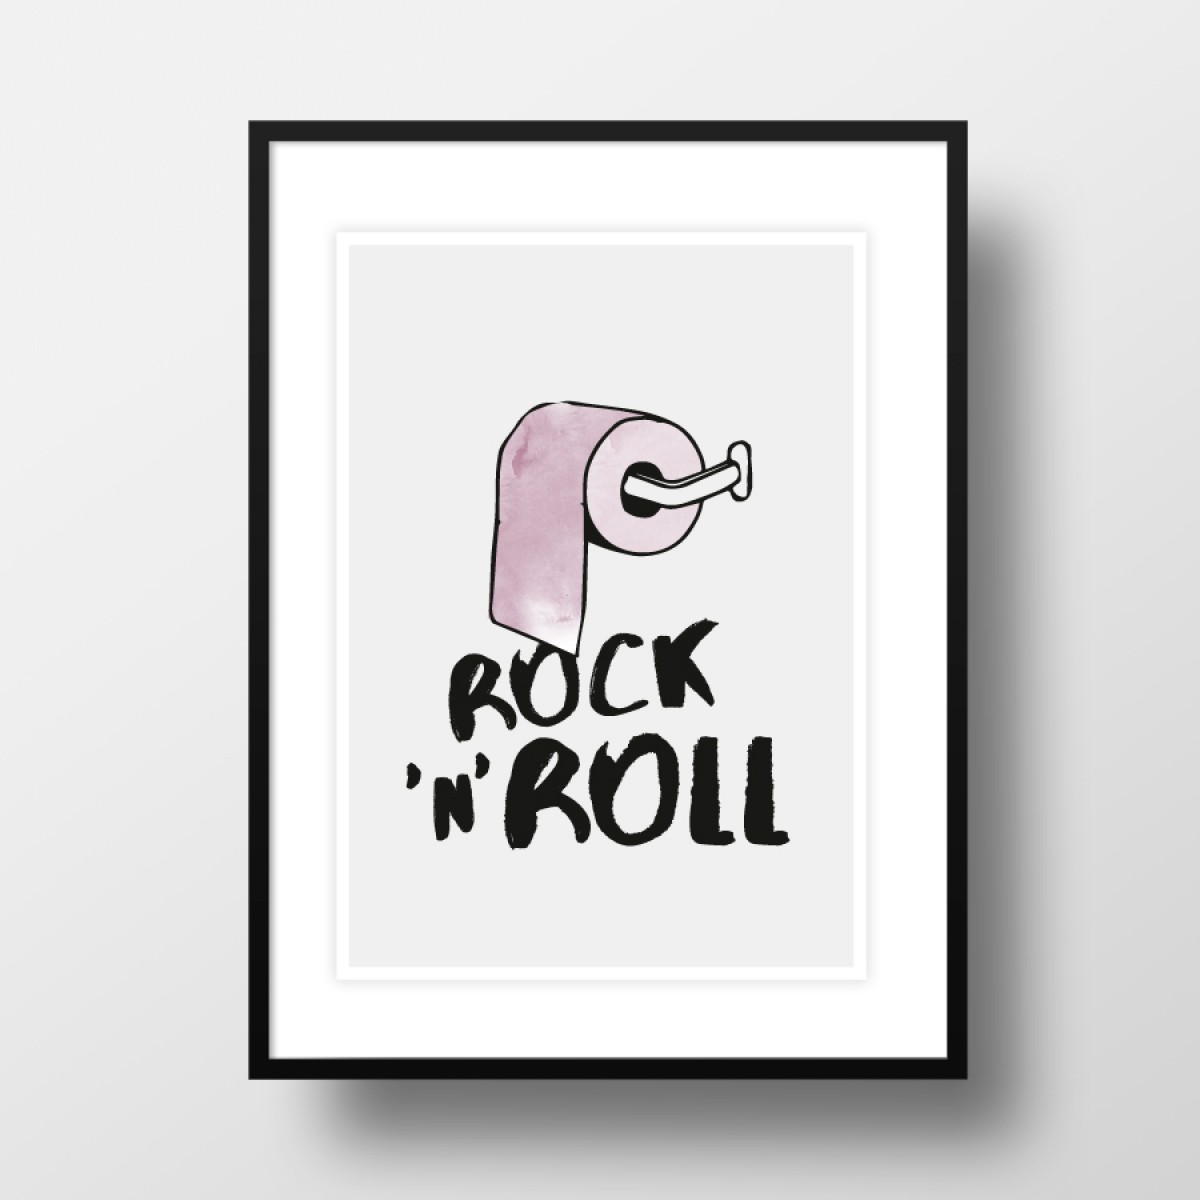 Amy & Kurt Berlin A3 Artprint "Rock'n'roll"